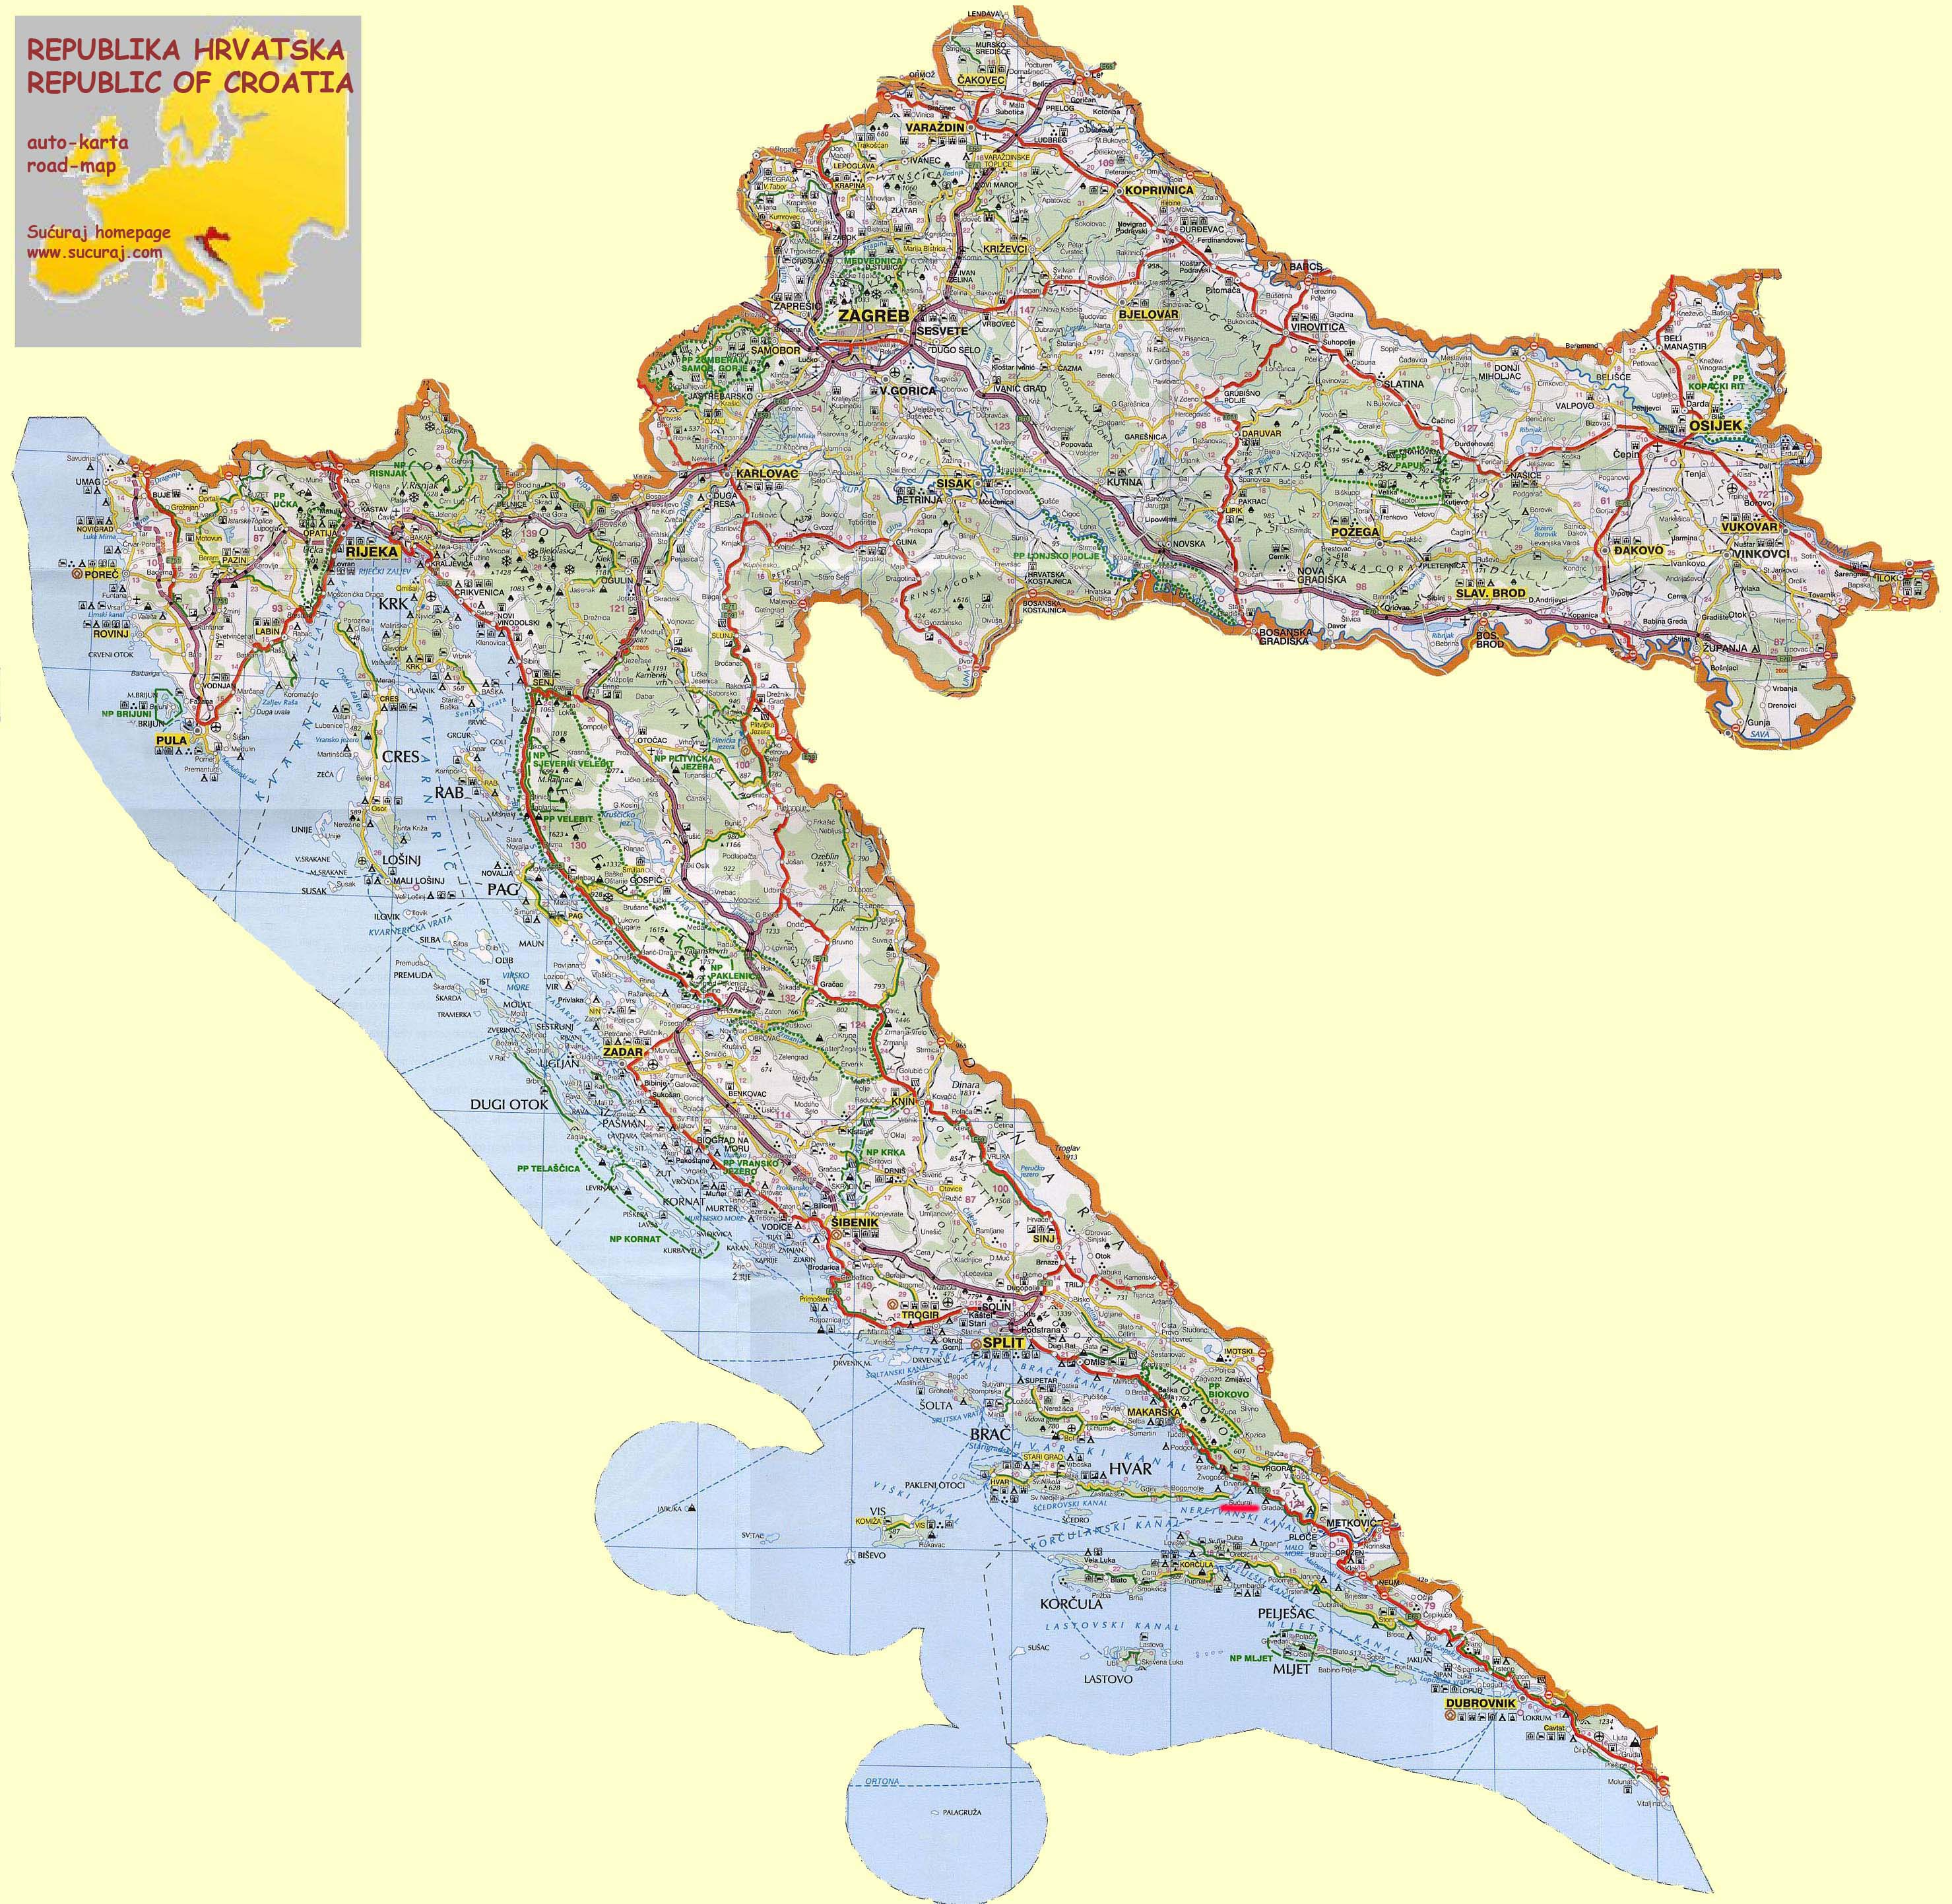 online karta hrvatske Island Hvar.info   How to reach Hvar? online karta hrvatske